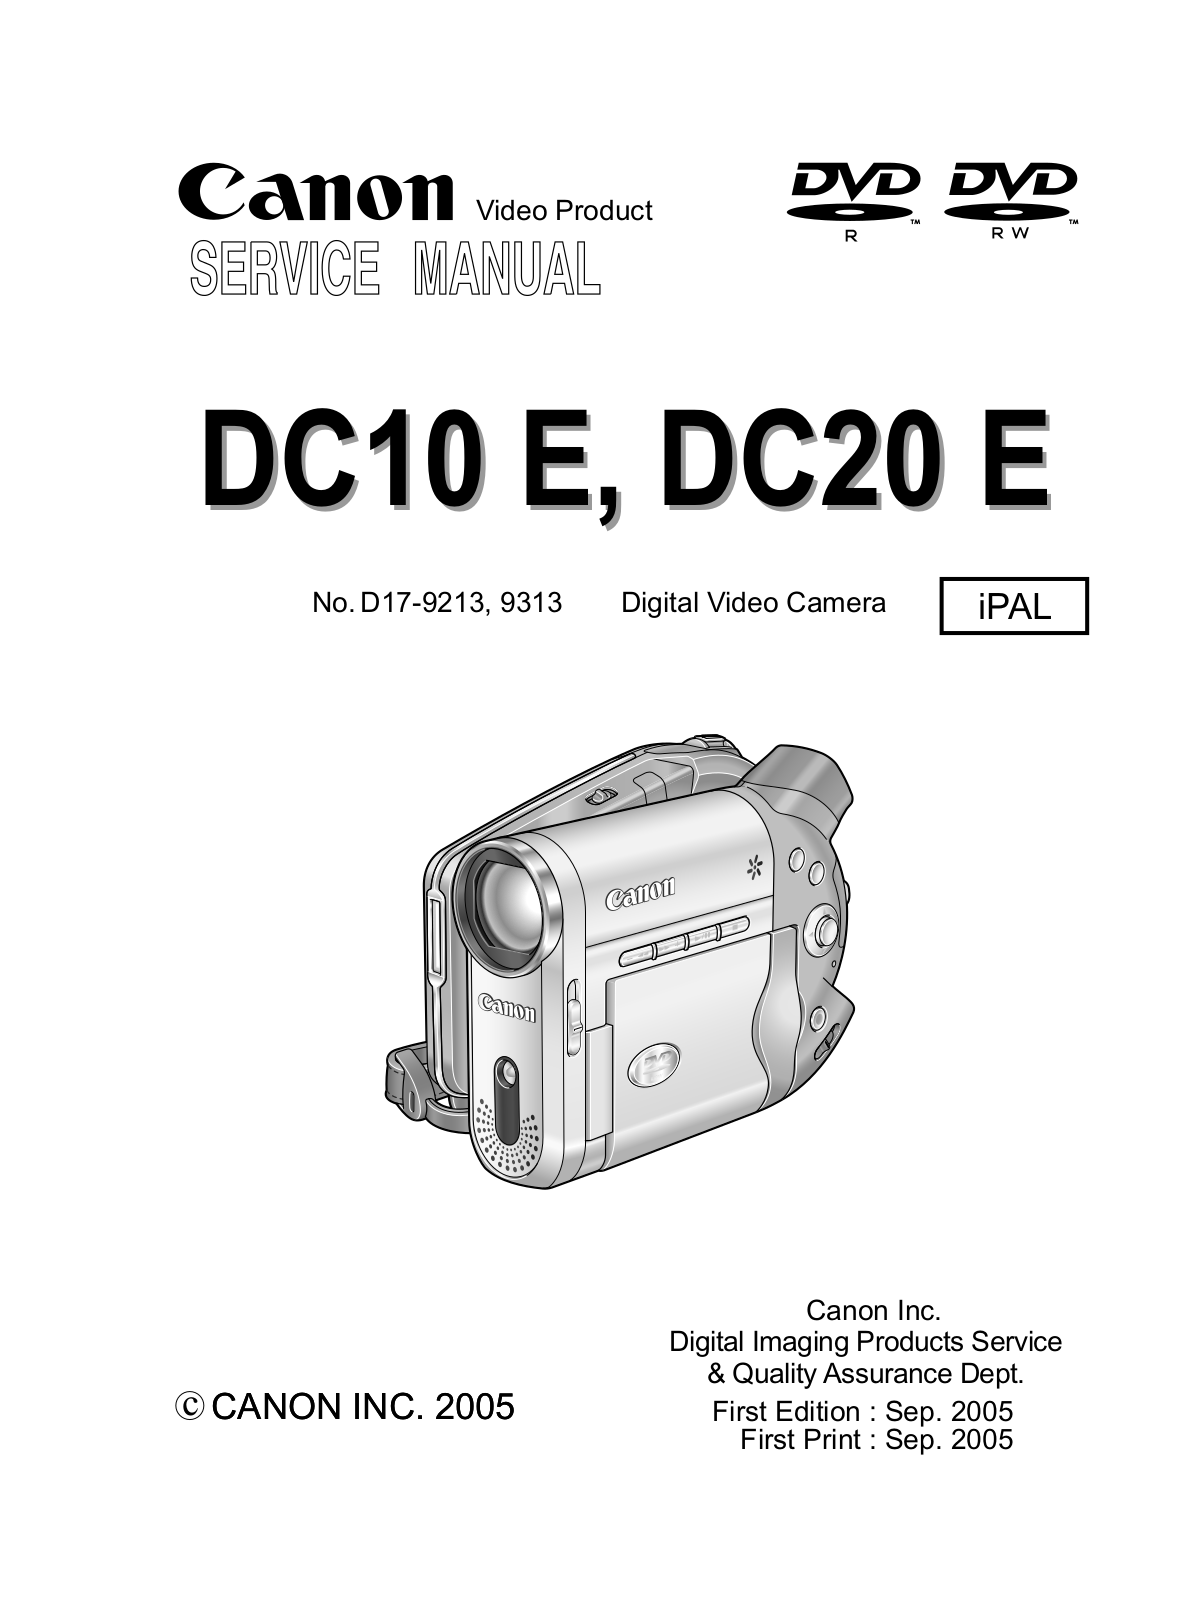 CANON DC10 E, DC20 E Service Manual